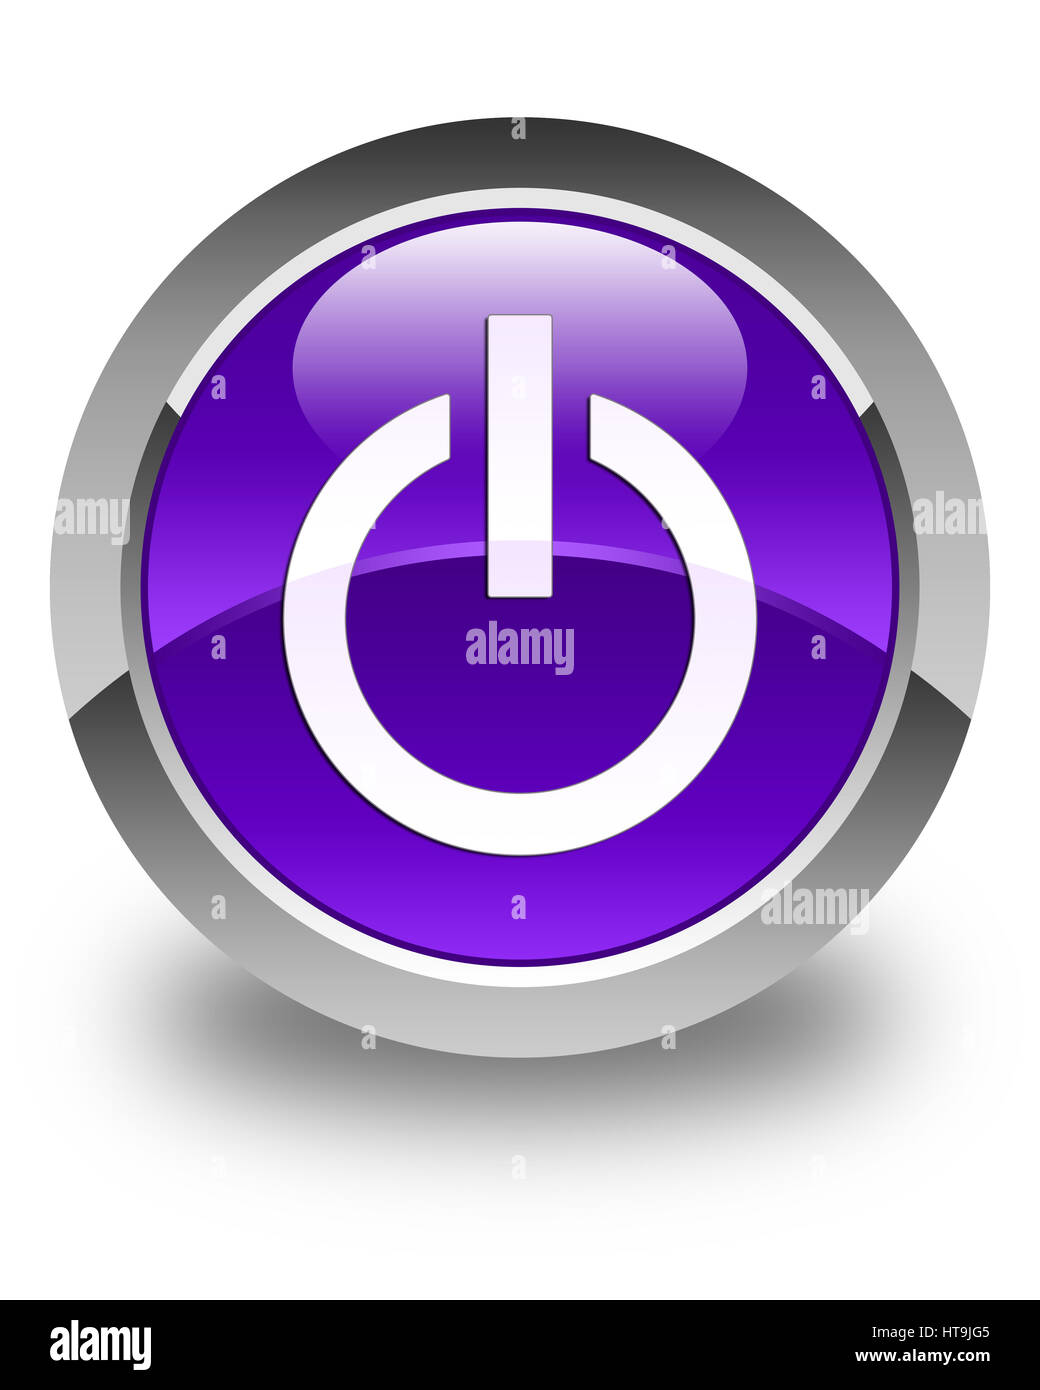 Icône d'alimentation isolé sur bouton rond violet brillant abstract illustration Banque D'Images